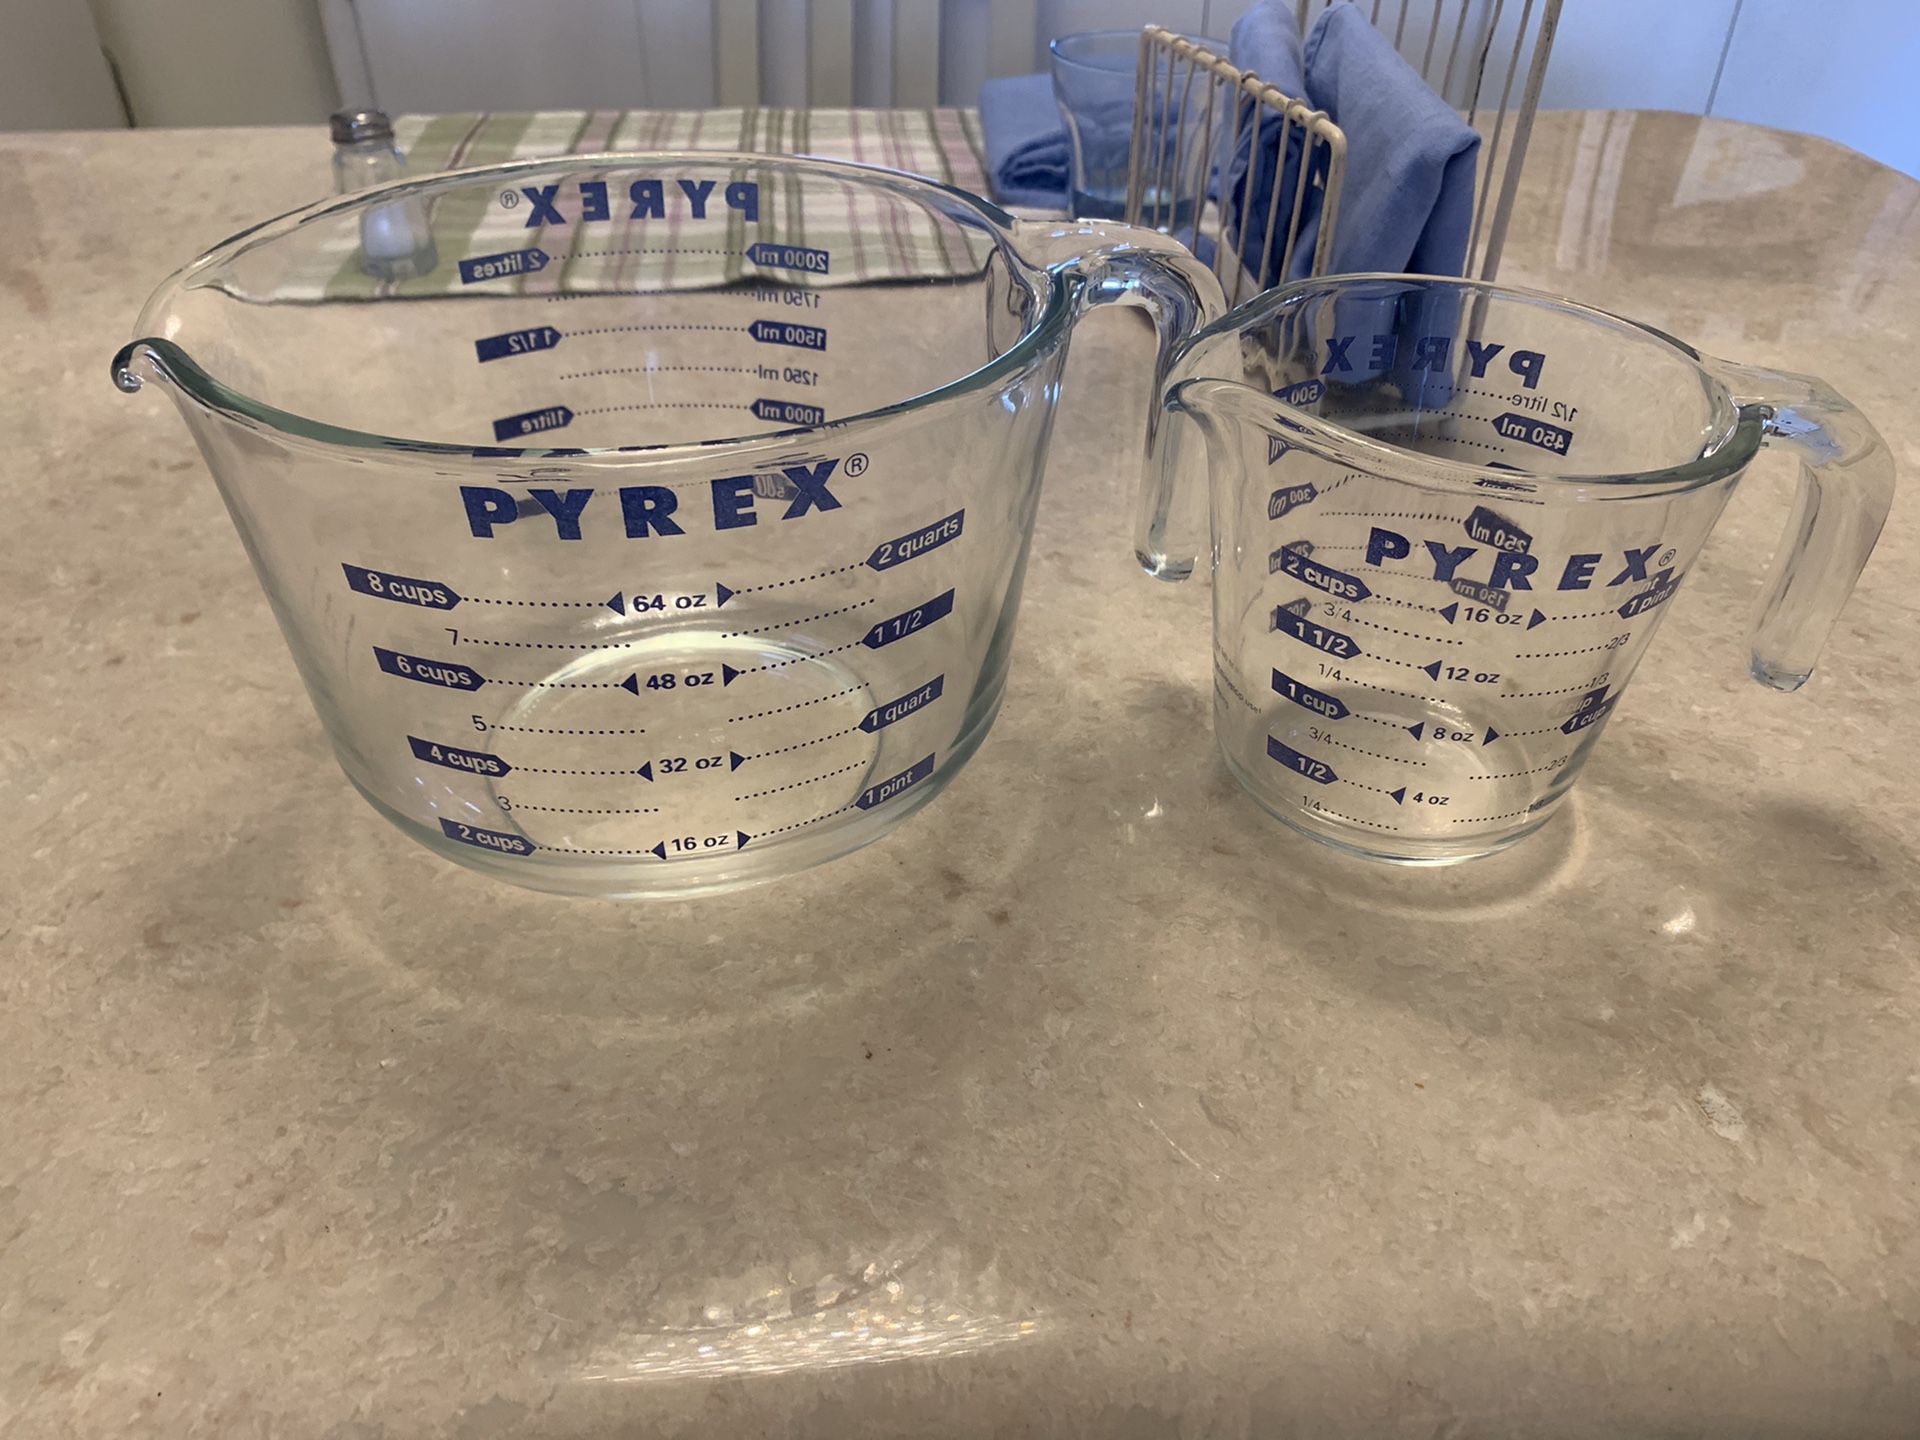 Pyrex liquid measure